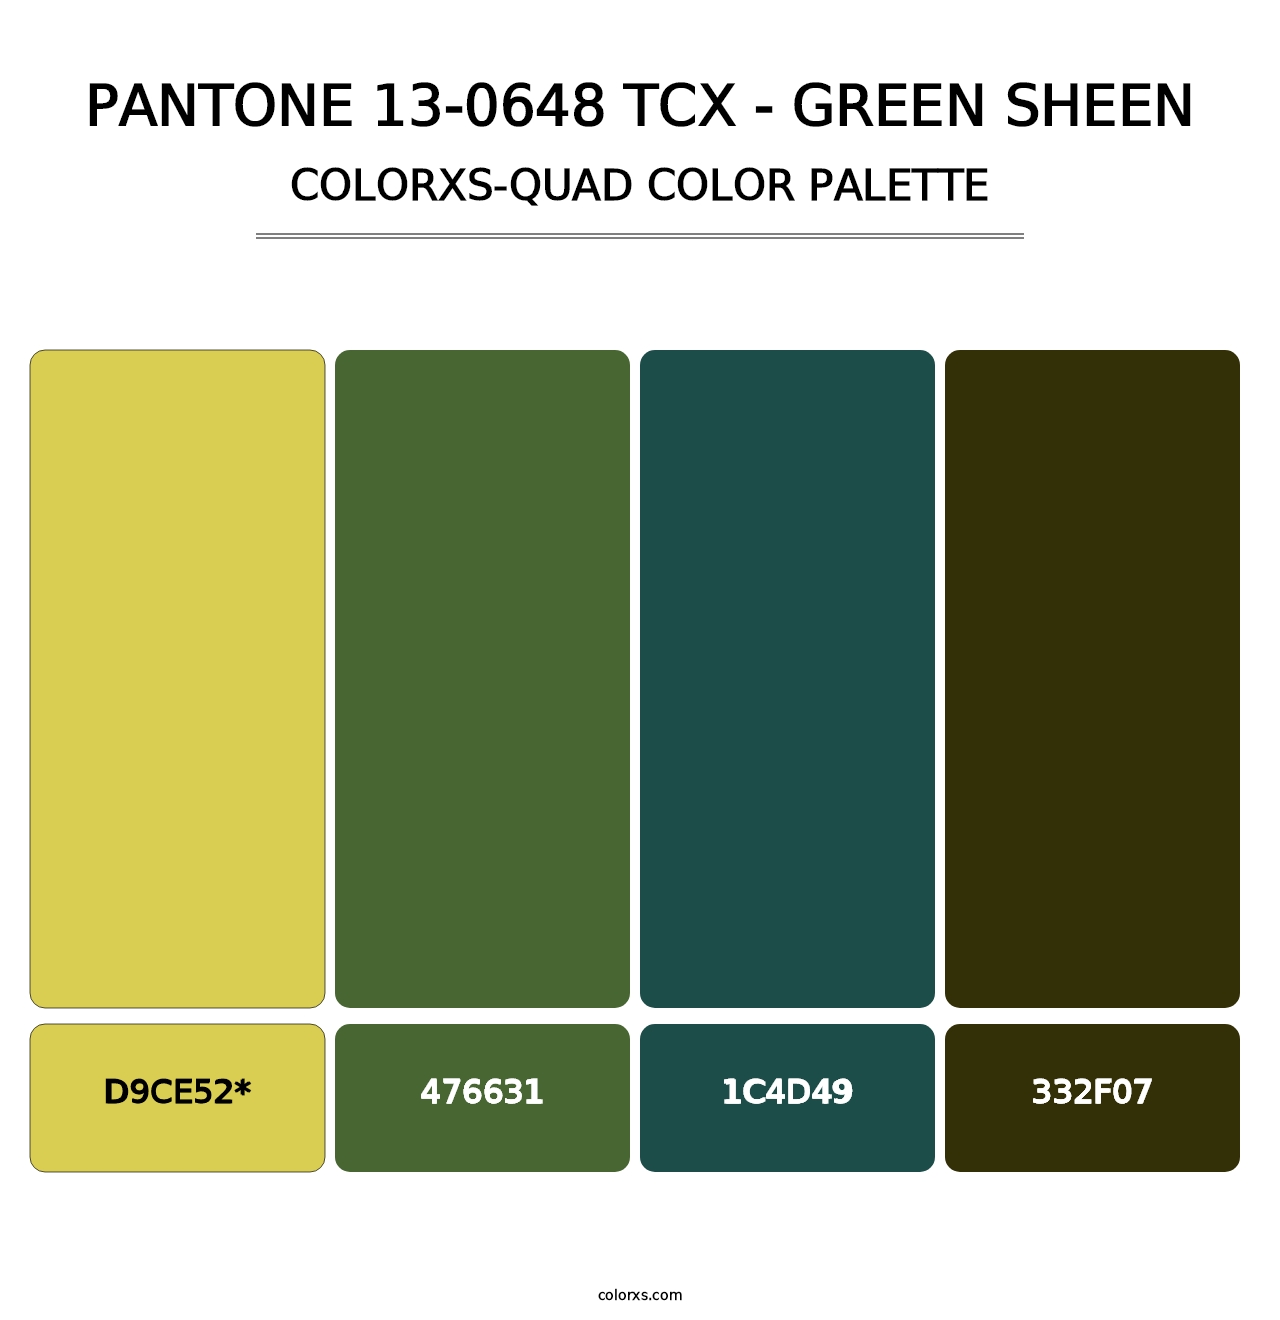 PANTONE 13-0648 TCX - Green Sheen - Colorxs Quad Palette